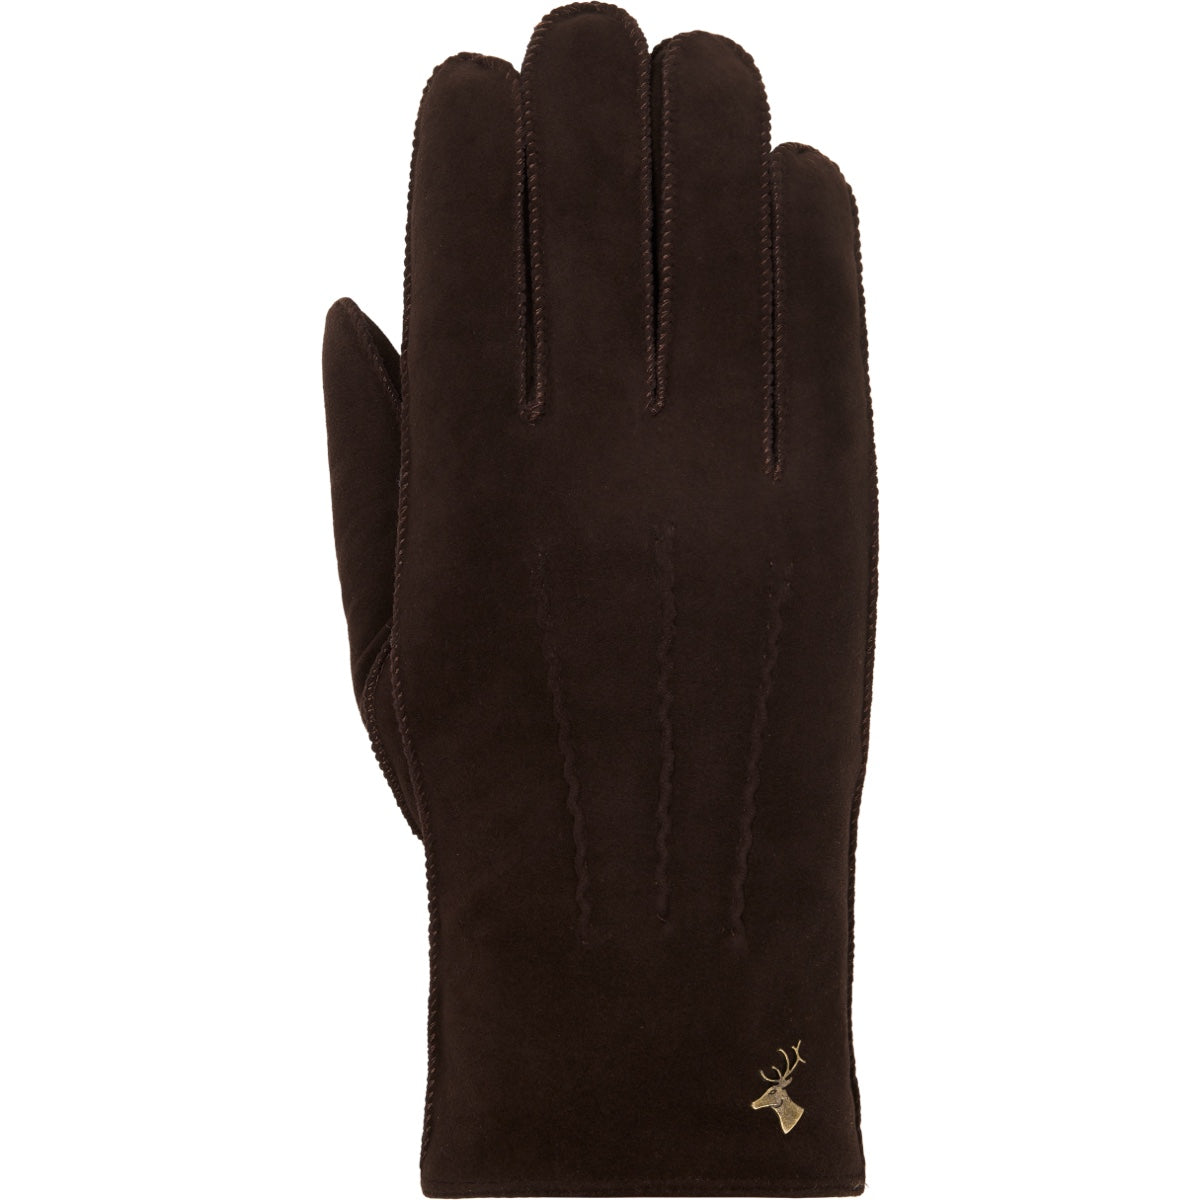 Suede Goatskin Leather Gloves Brown Women Josie - Schwartz & von Halen® - Premium Leather Gloves - 1